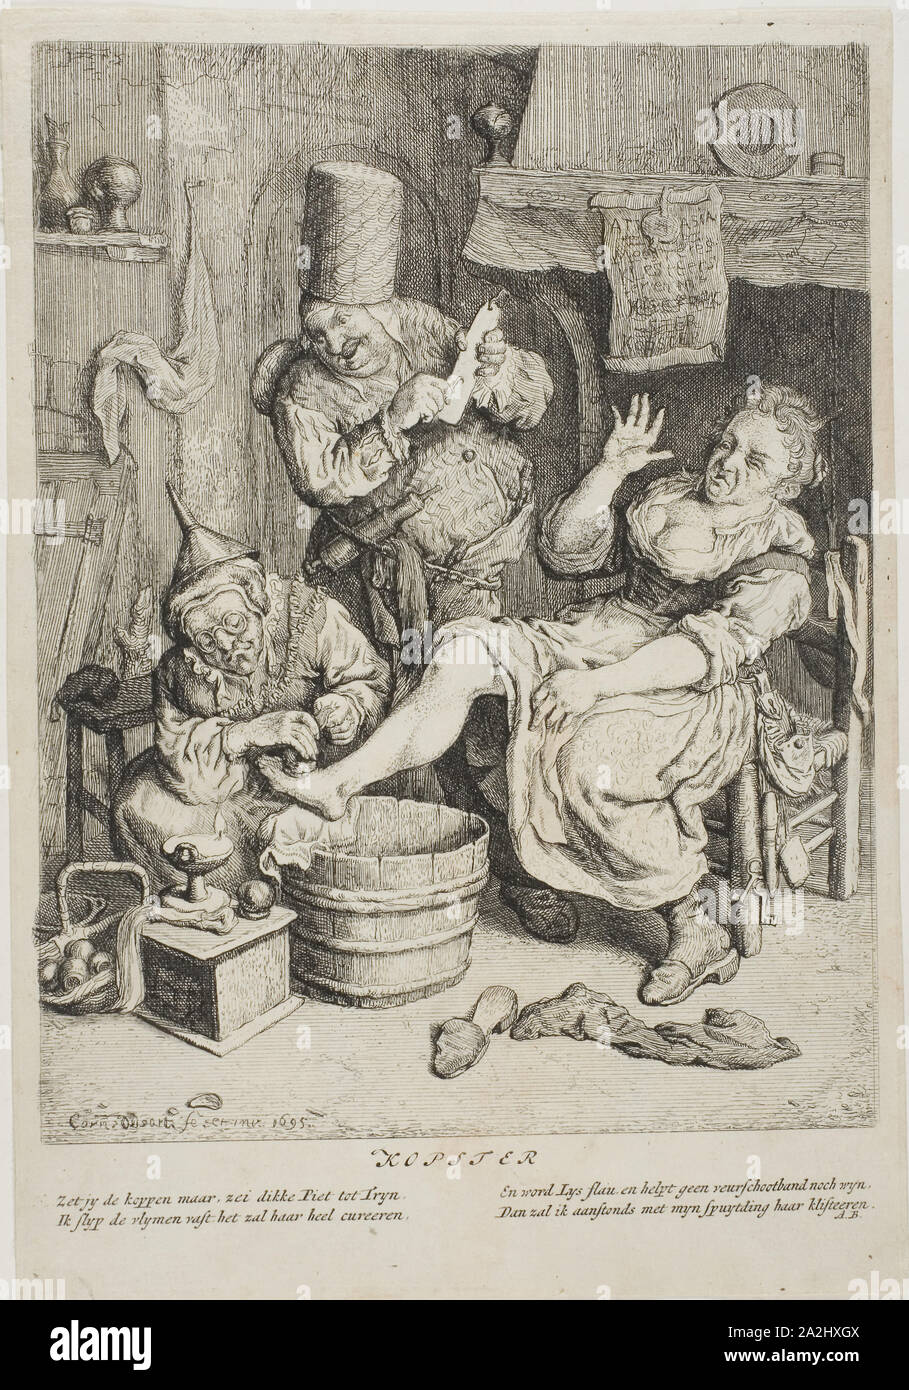 Il rame (Kopster), 1695, Cornelis Dusart, Olandese, 1660-1704, Olanda, incisione su carta, 223 x 170 mm (nell'immagine), 257 x 176 mm (platemark), 263 x 181 (foglio Foto Stock